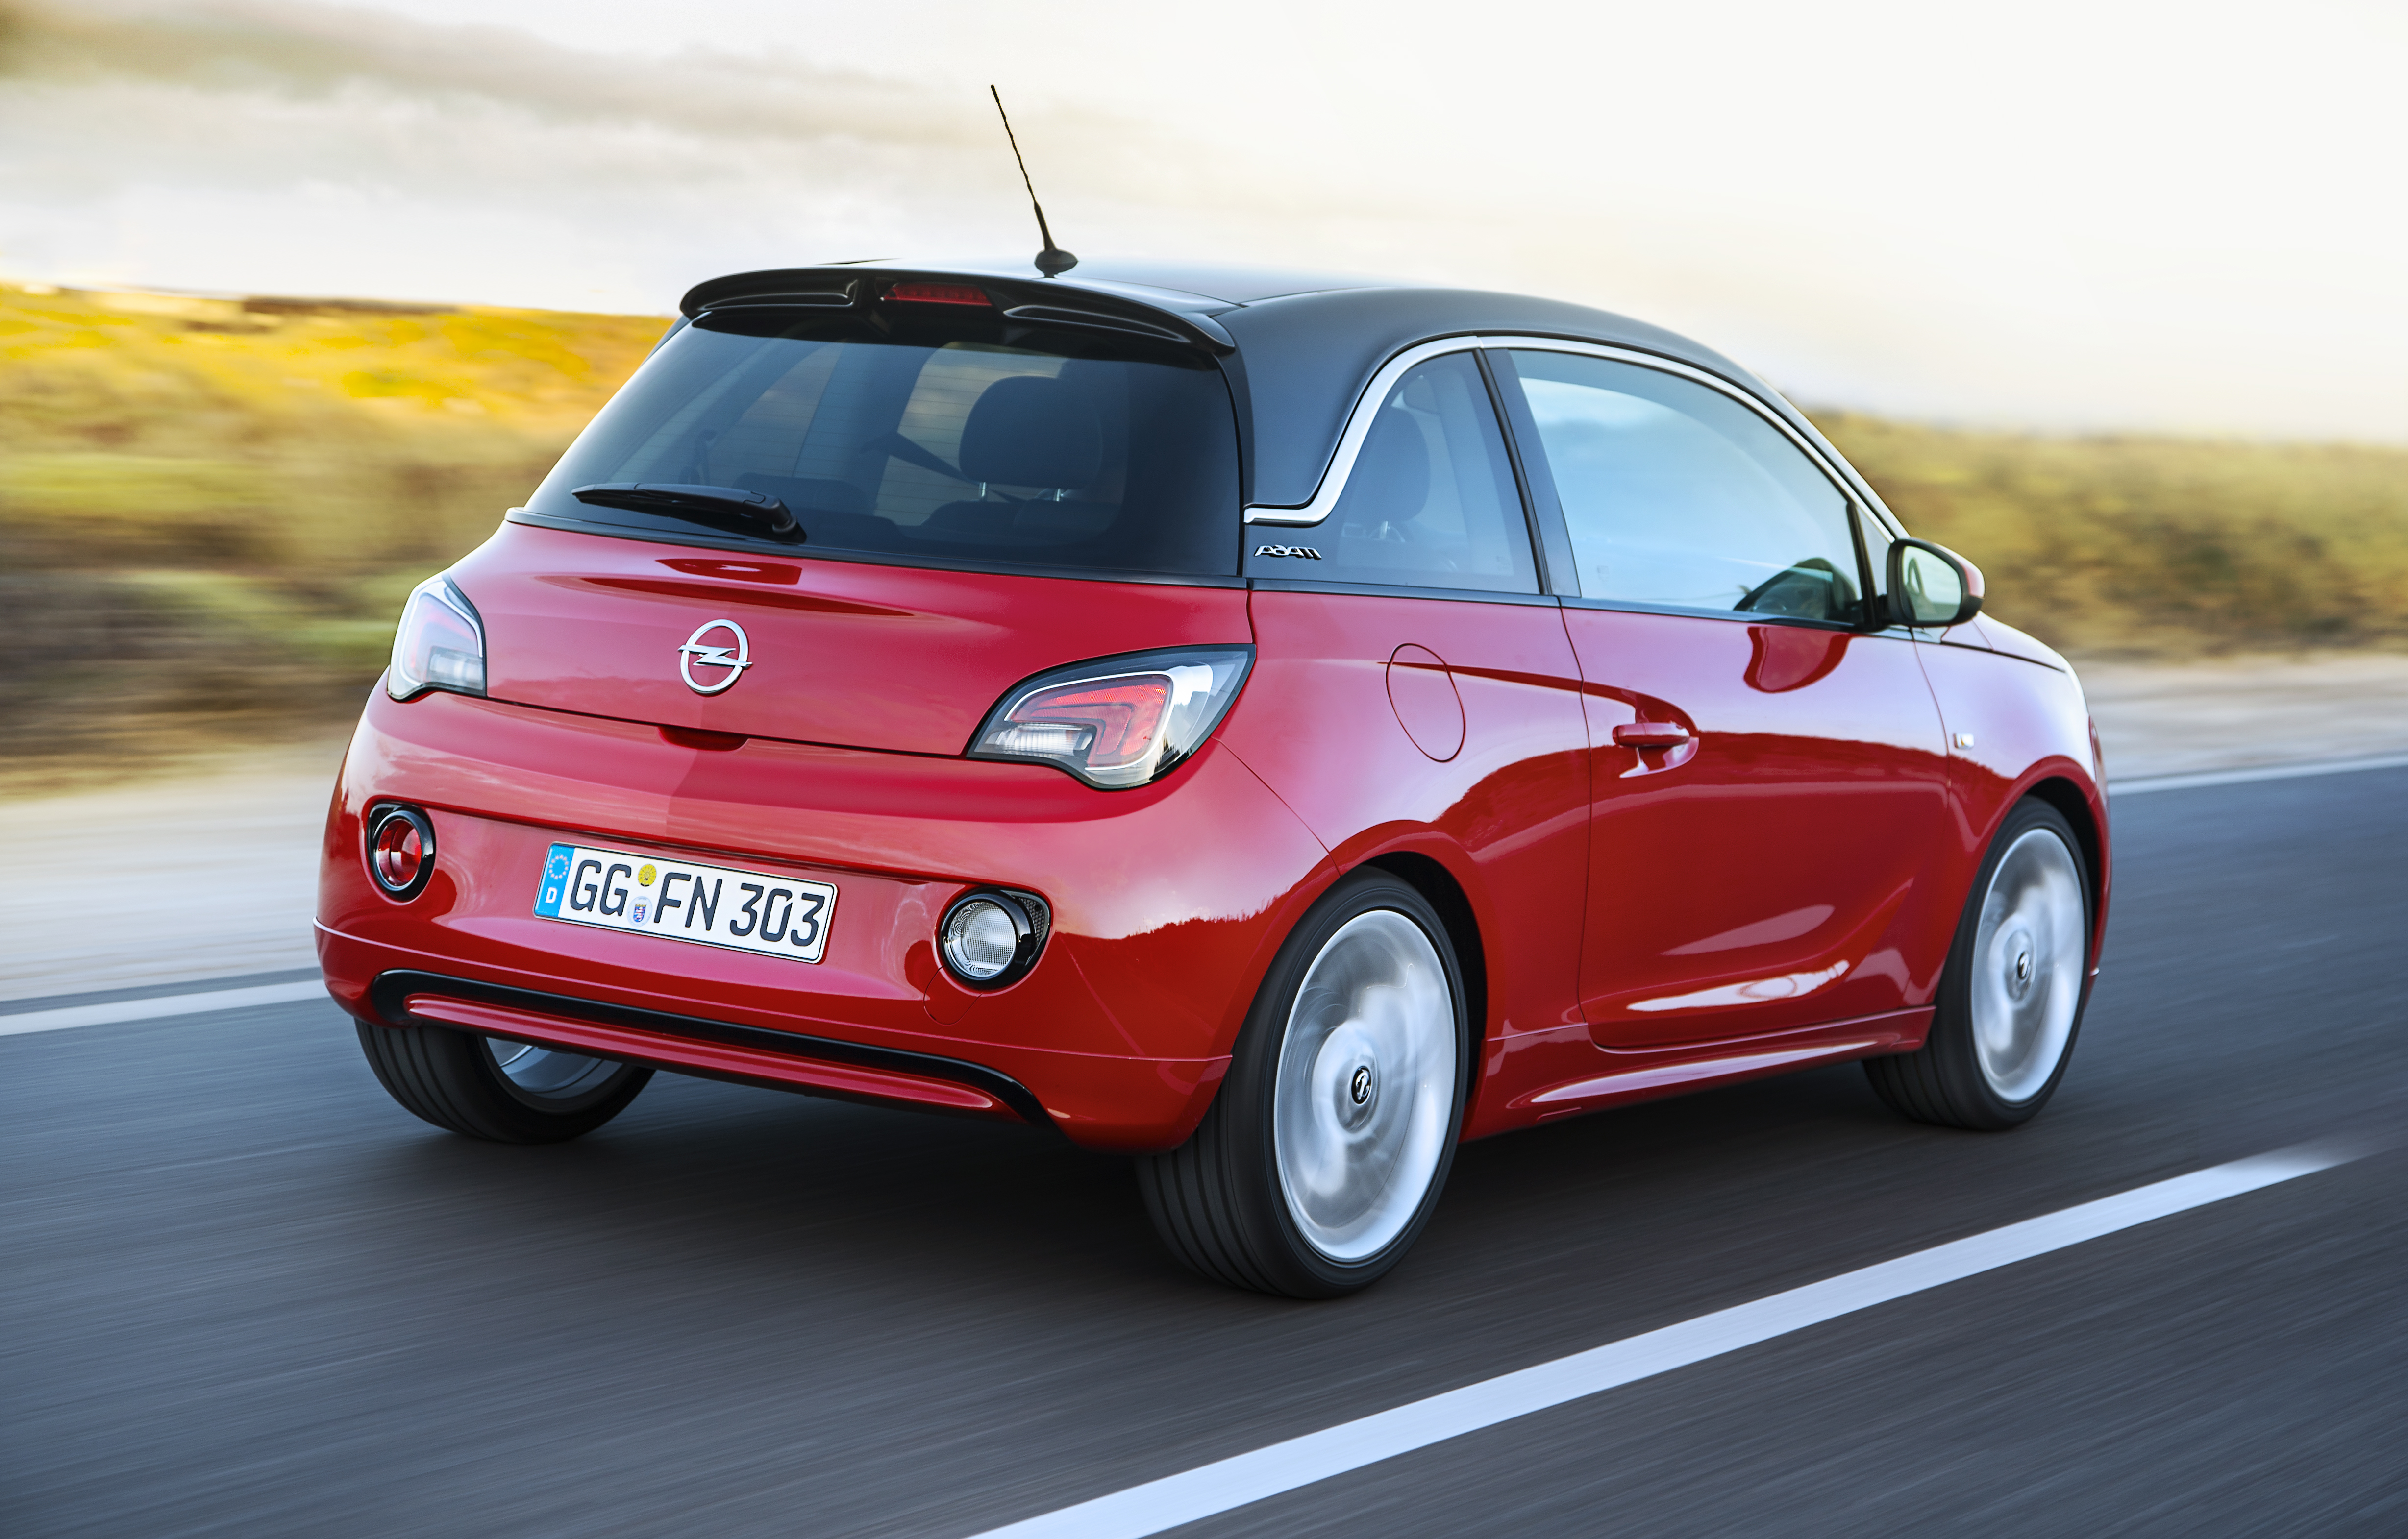 Opel Adam Maximale Fahrleistungen Bei Minimalem Verbrauch Opel Automobile Gmbh Pressemitteilung Lifepr